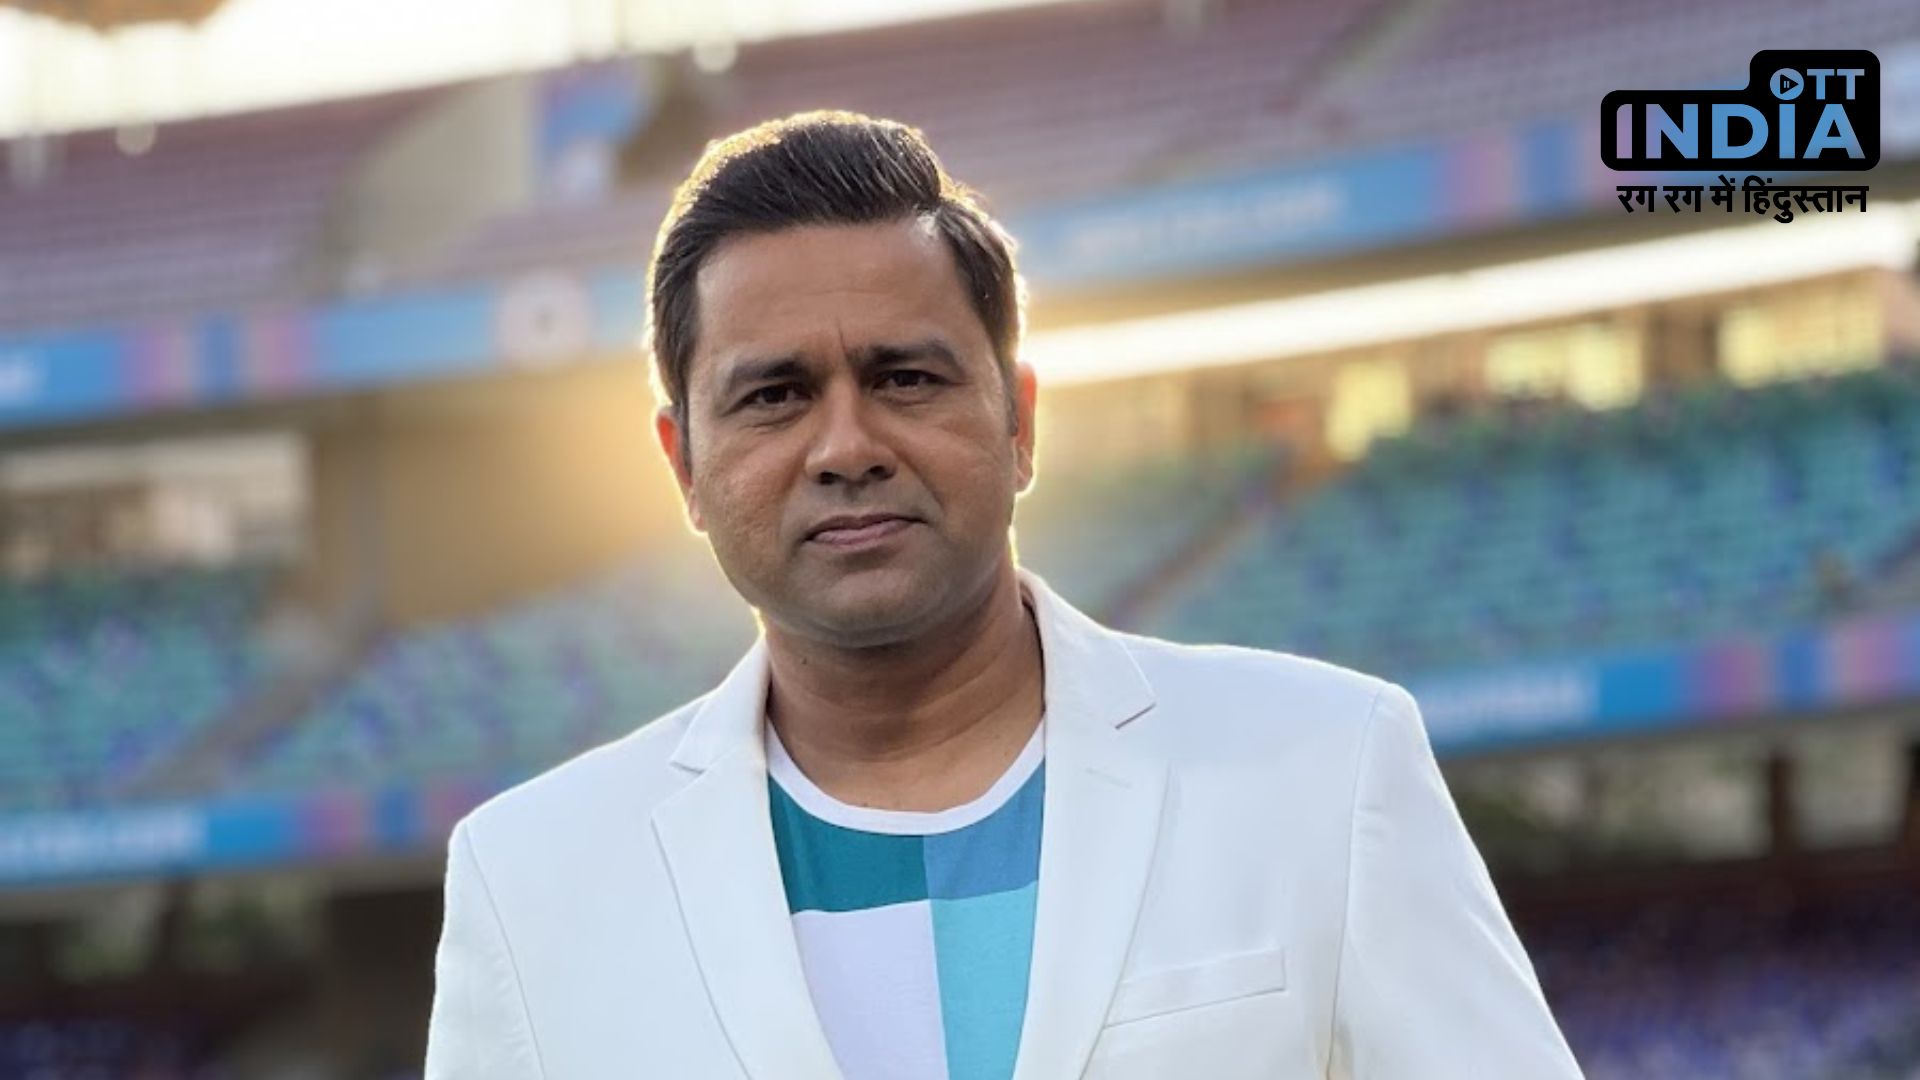 Aakash Chopra : क्रिकेट कमेंटेटर आकाश चोपड़ा के साथ 33 लाख रुपये की धोखाधड़ी, मामला दर्ज…